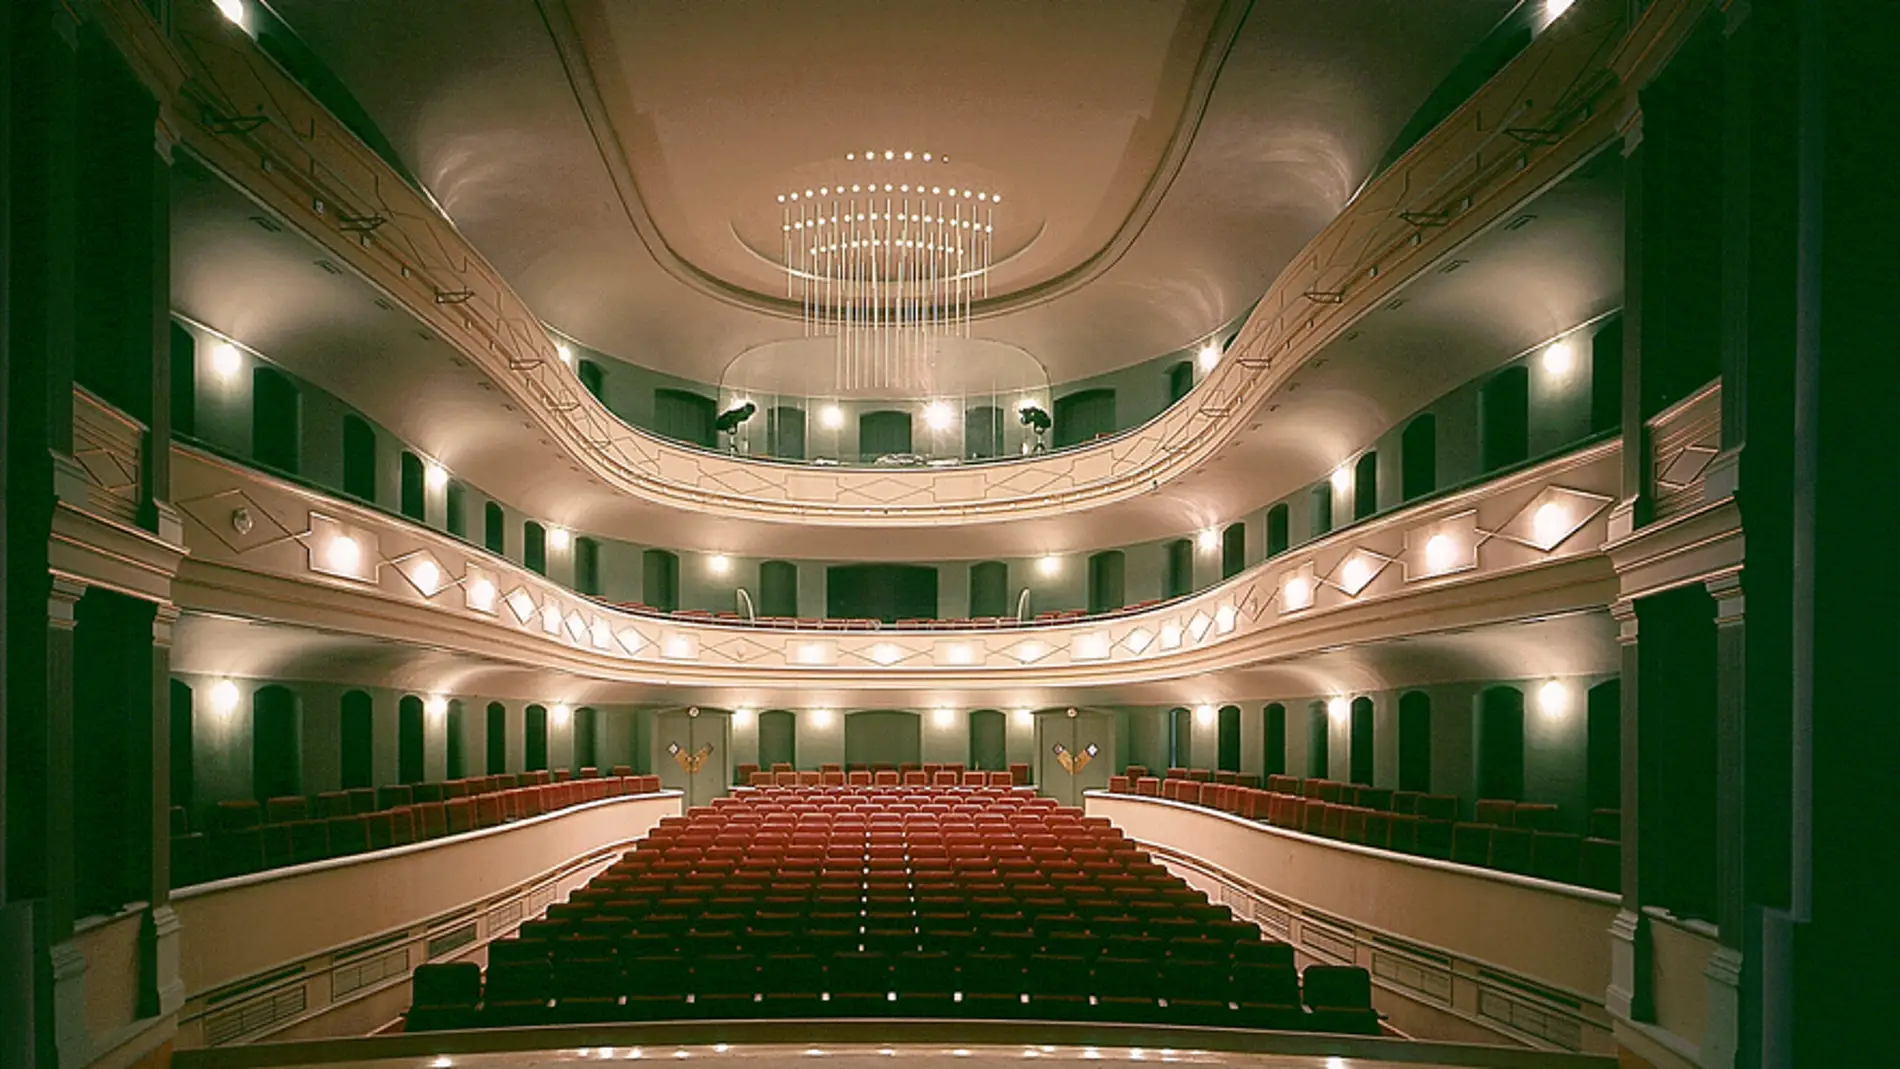 Teatro Principal de Puerto Real